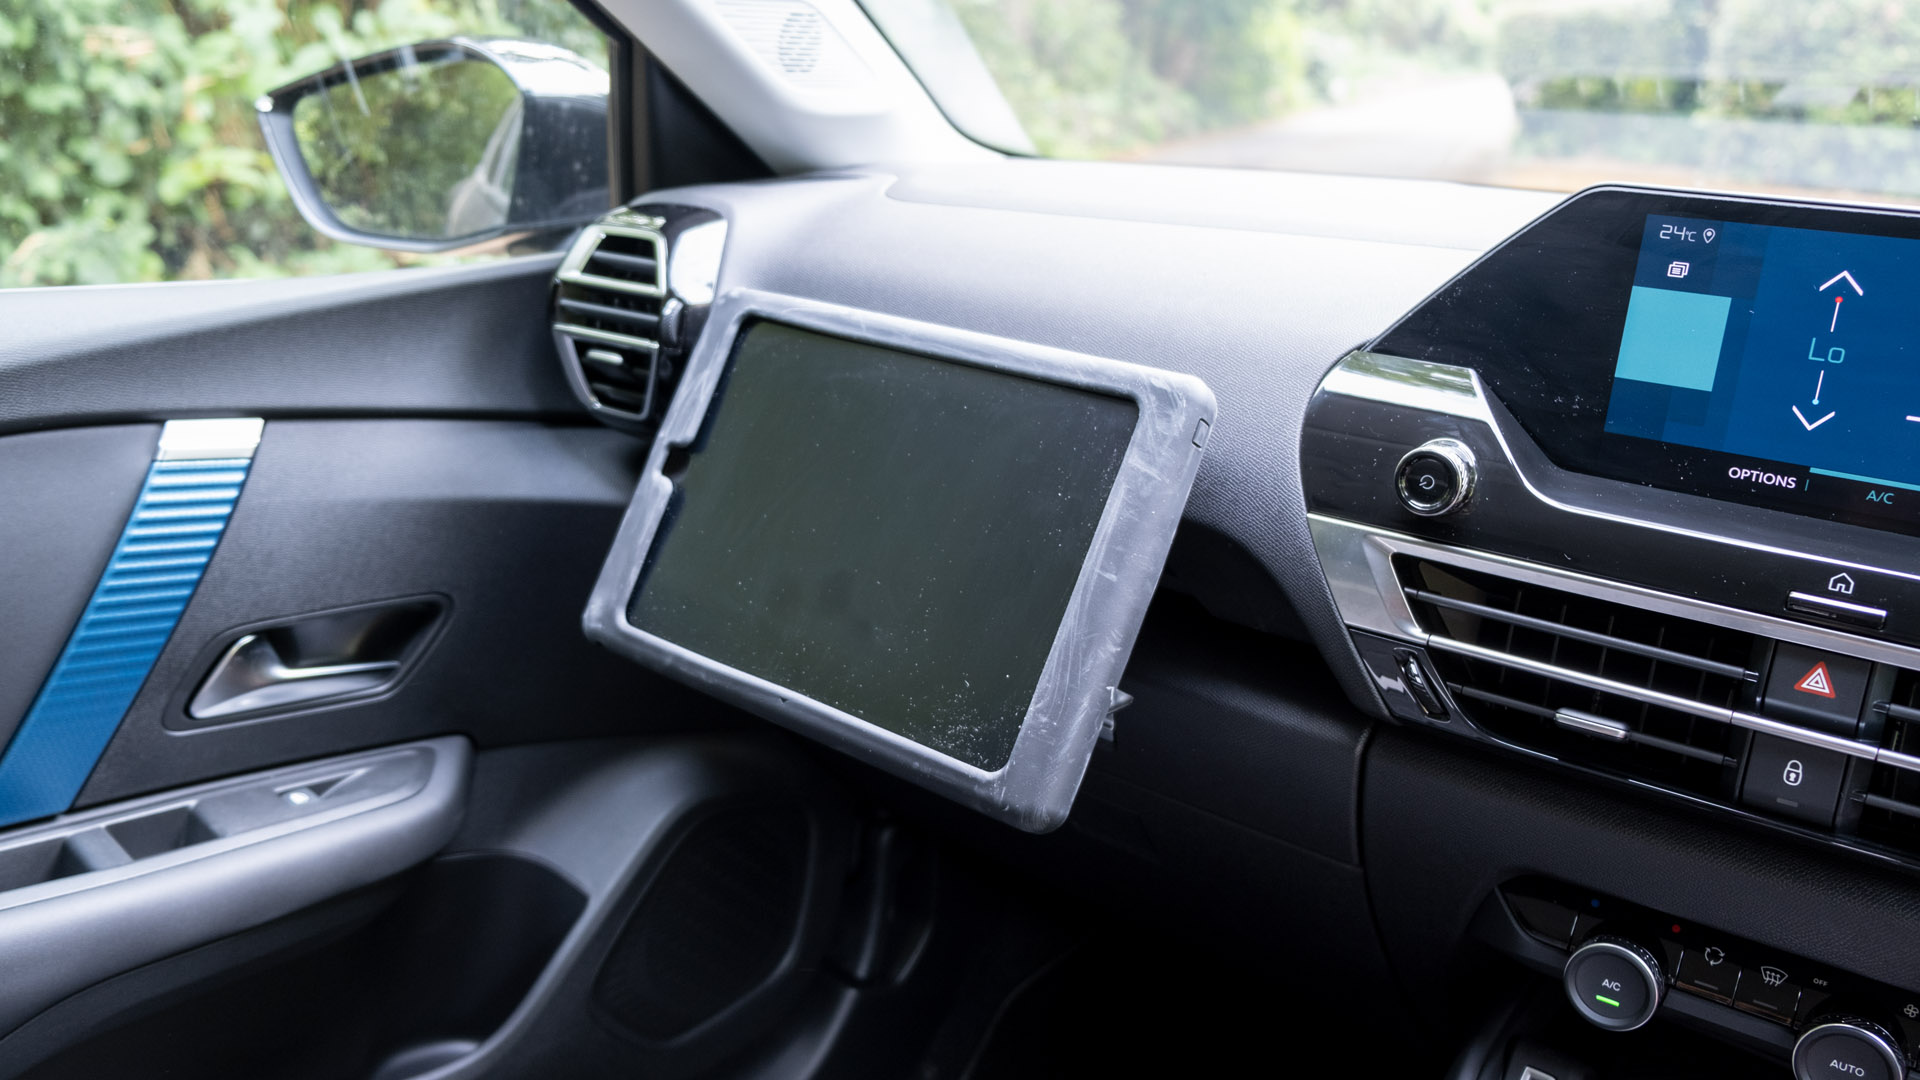 Querrás llevar la tablet en el nuevo Citroën C4 gracias a este accesorio